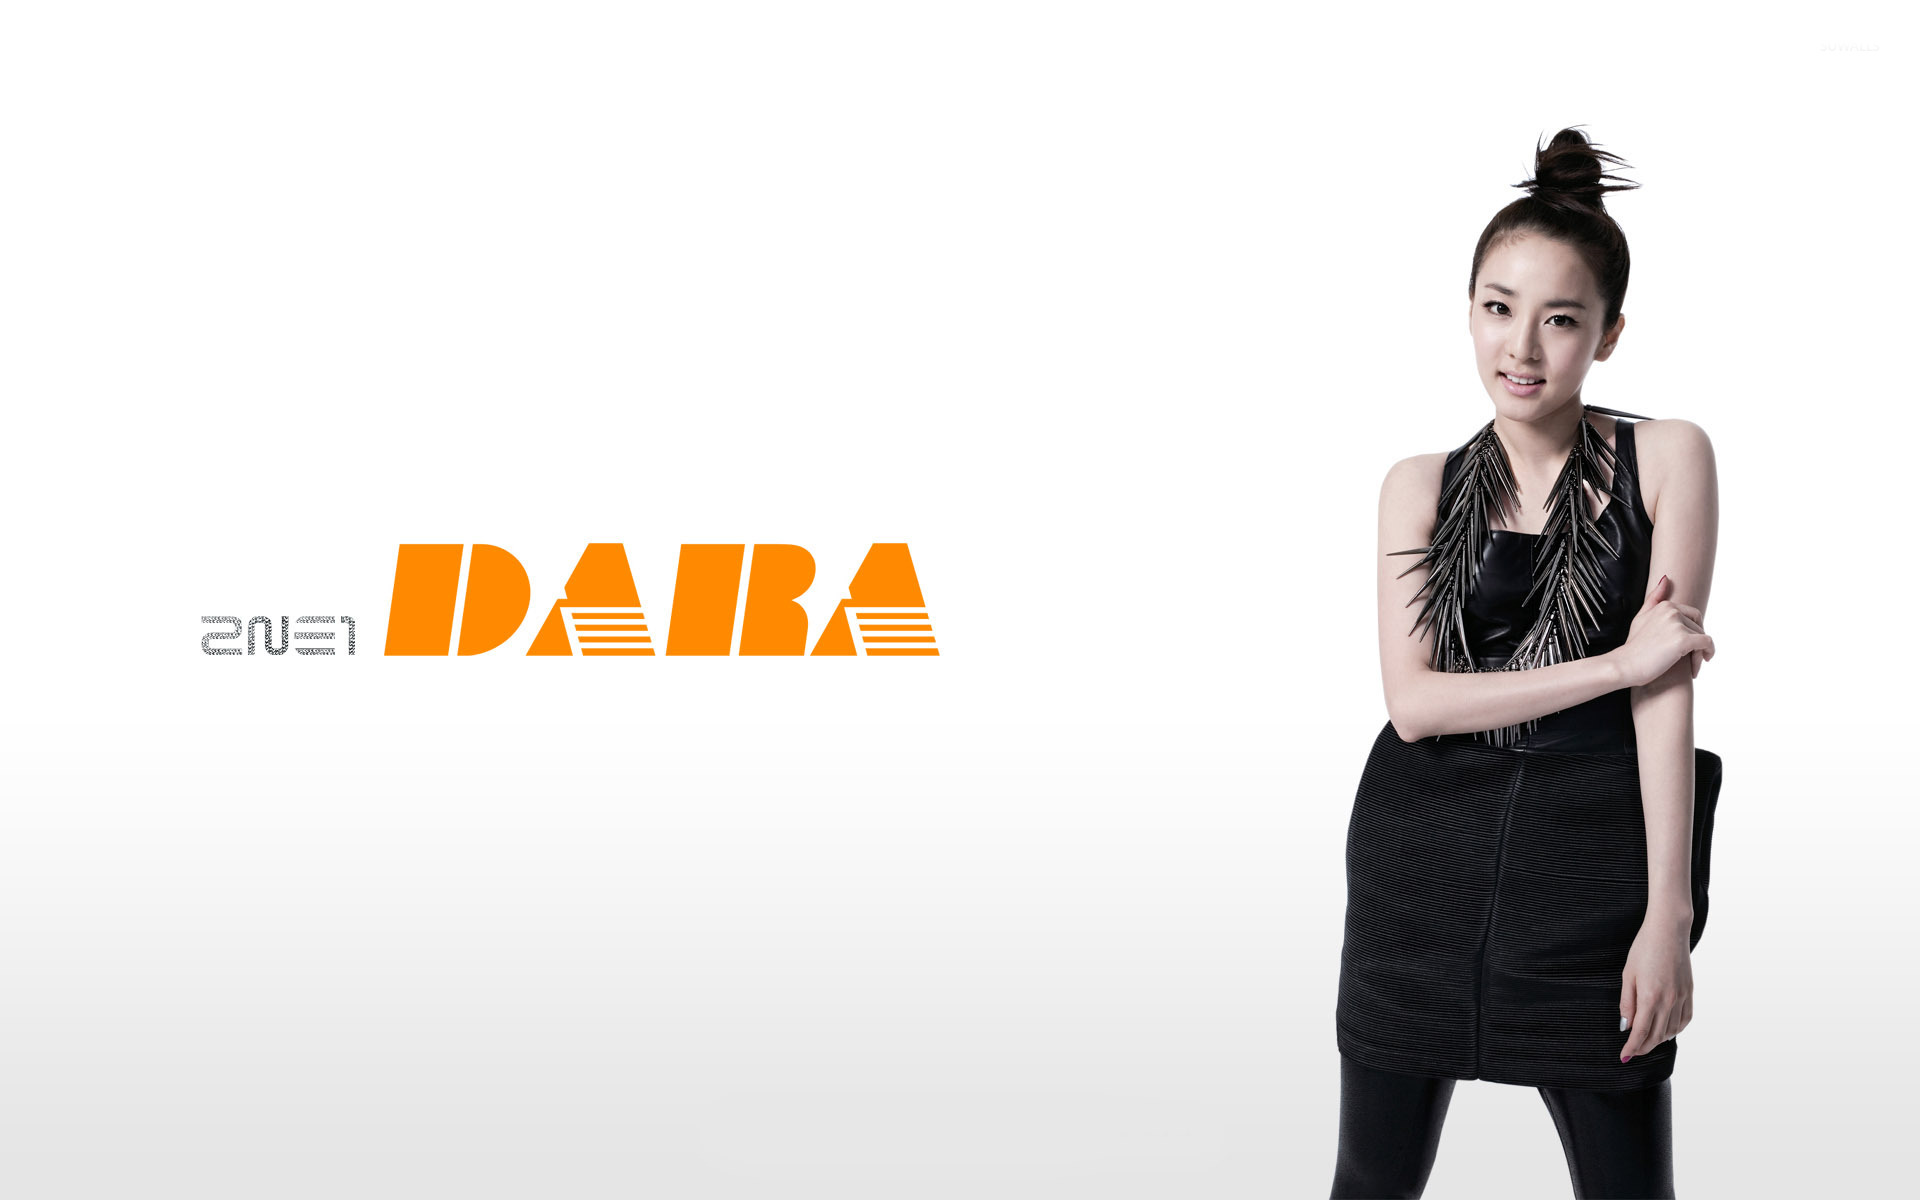 Dara 1080P, 2K, 4K, 5K HD wallpapers free download | Wallpaper Flare